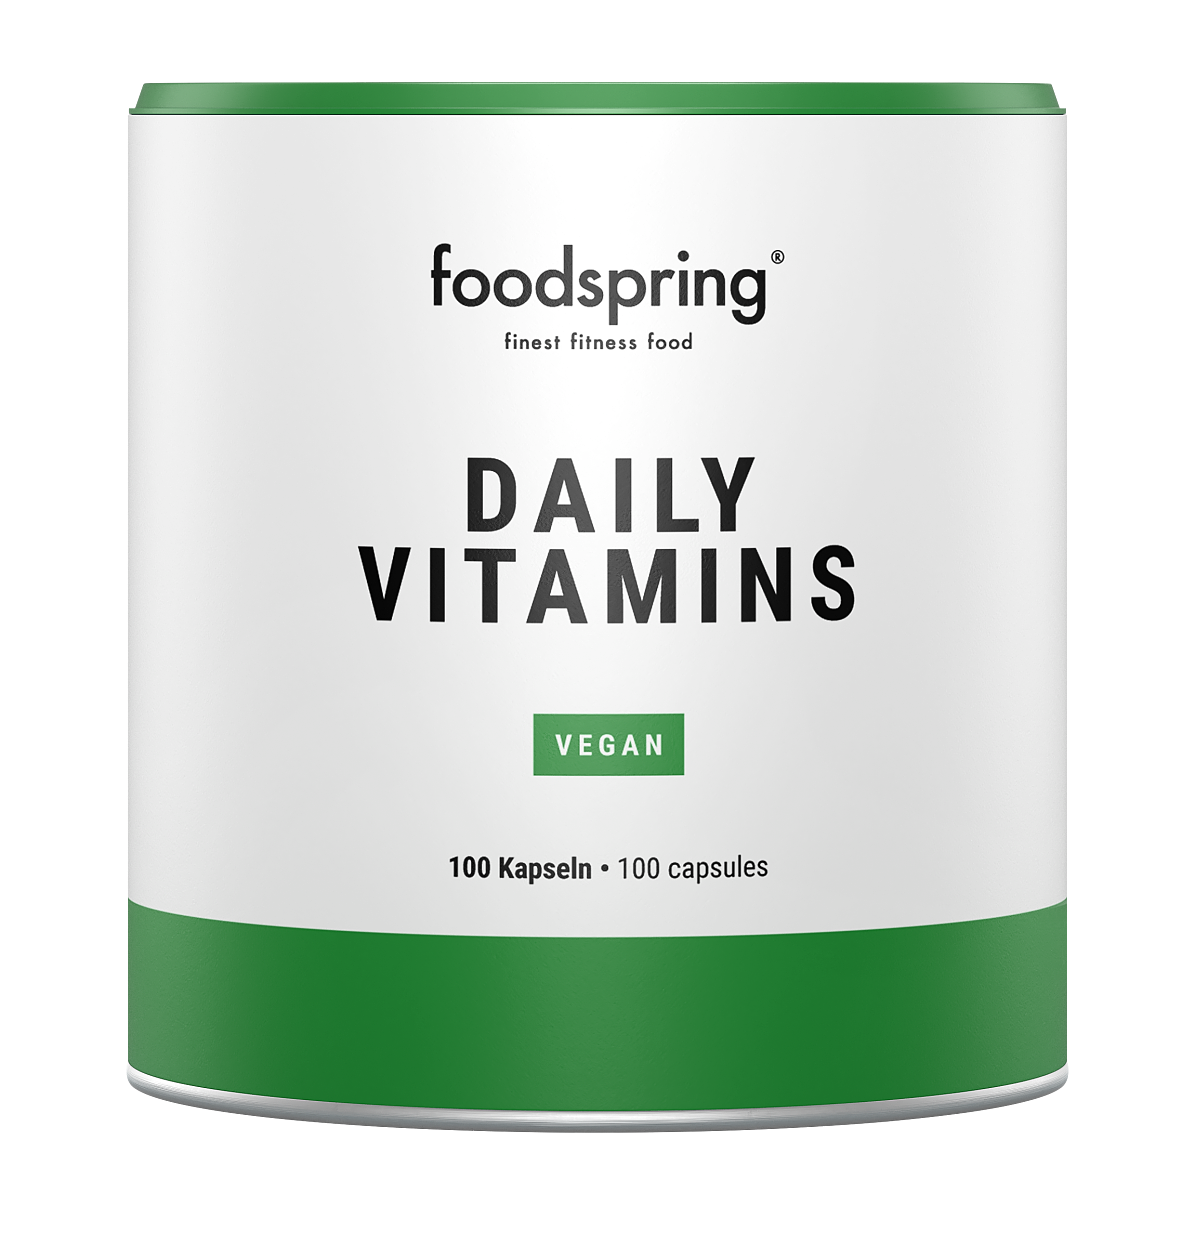 foodspring_Daily Vitamins_EUR 24,99_01